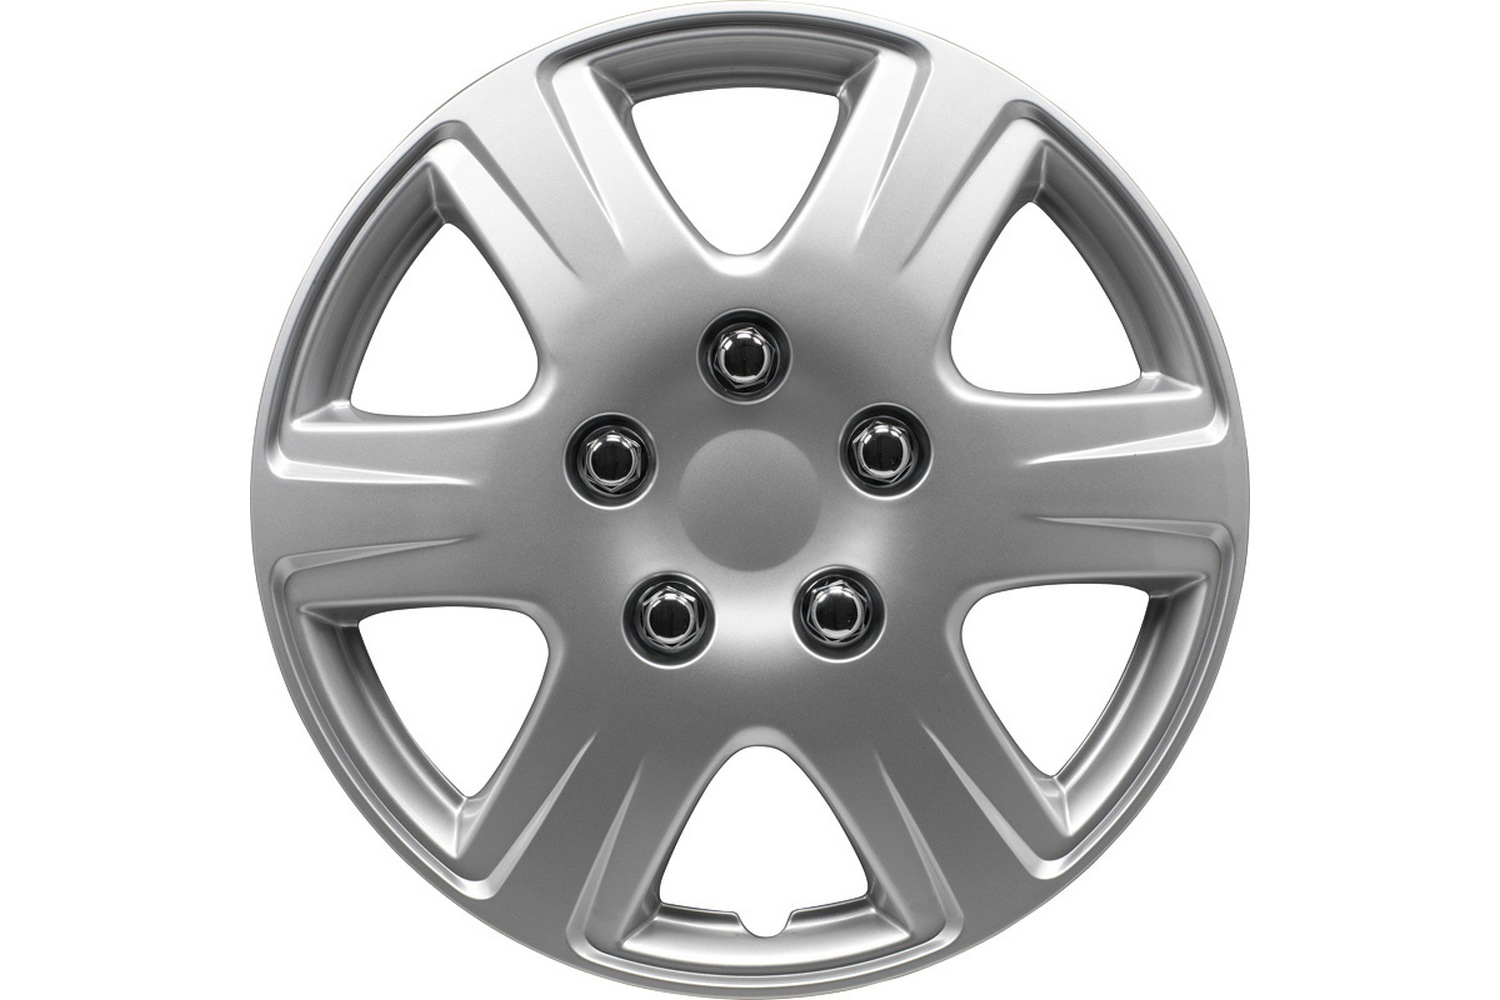 Wheel cover set Louisiana 15 inch 4 pcs (WHC121-15)